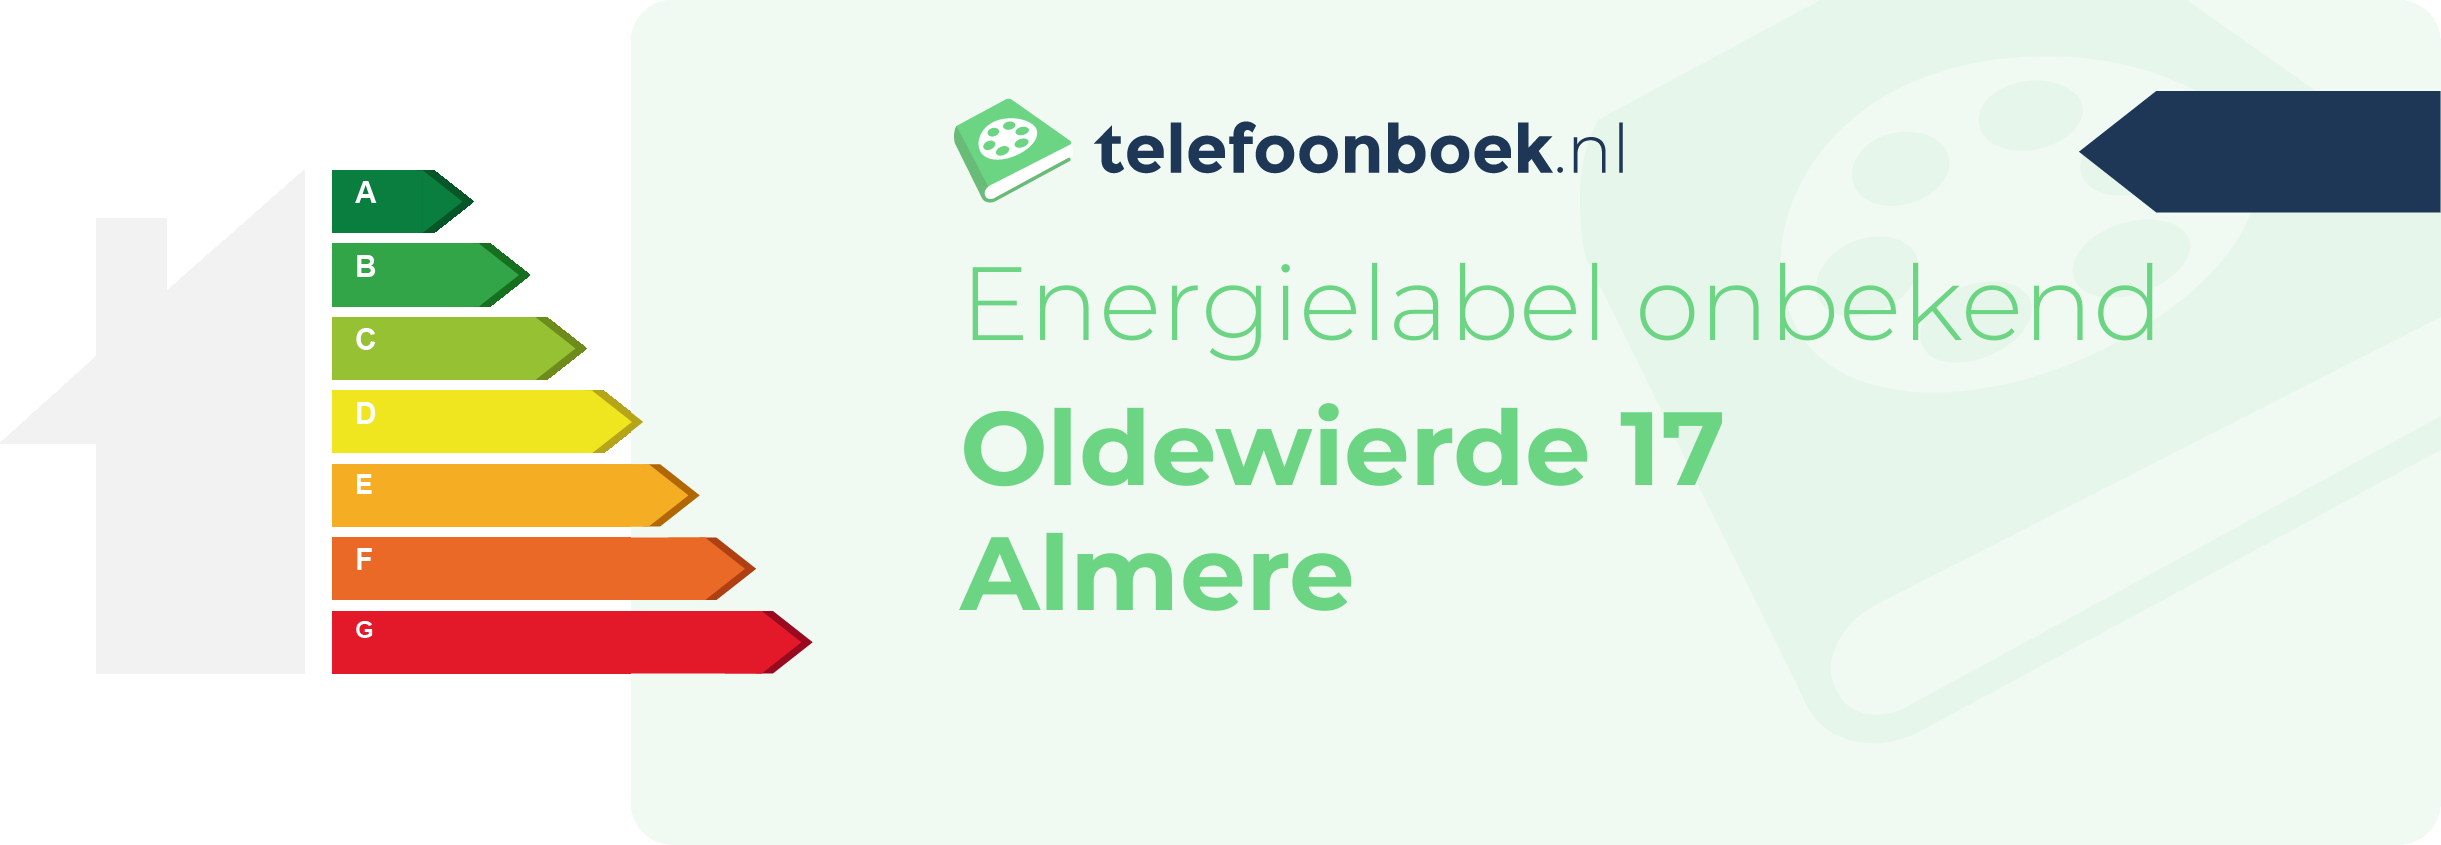 Energielabel Oldewierde 17 Almere